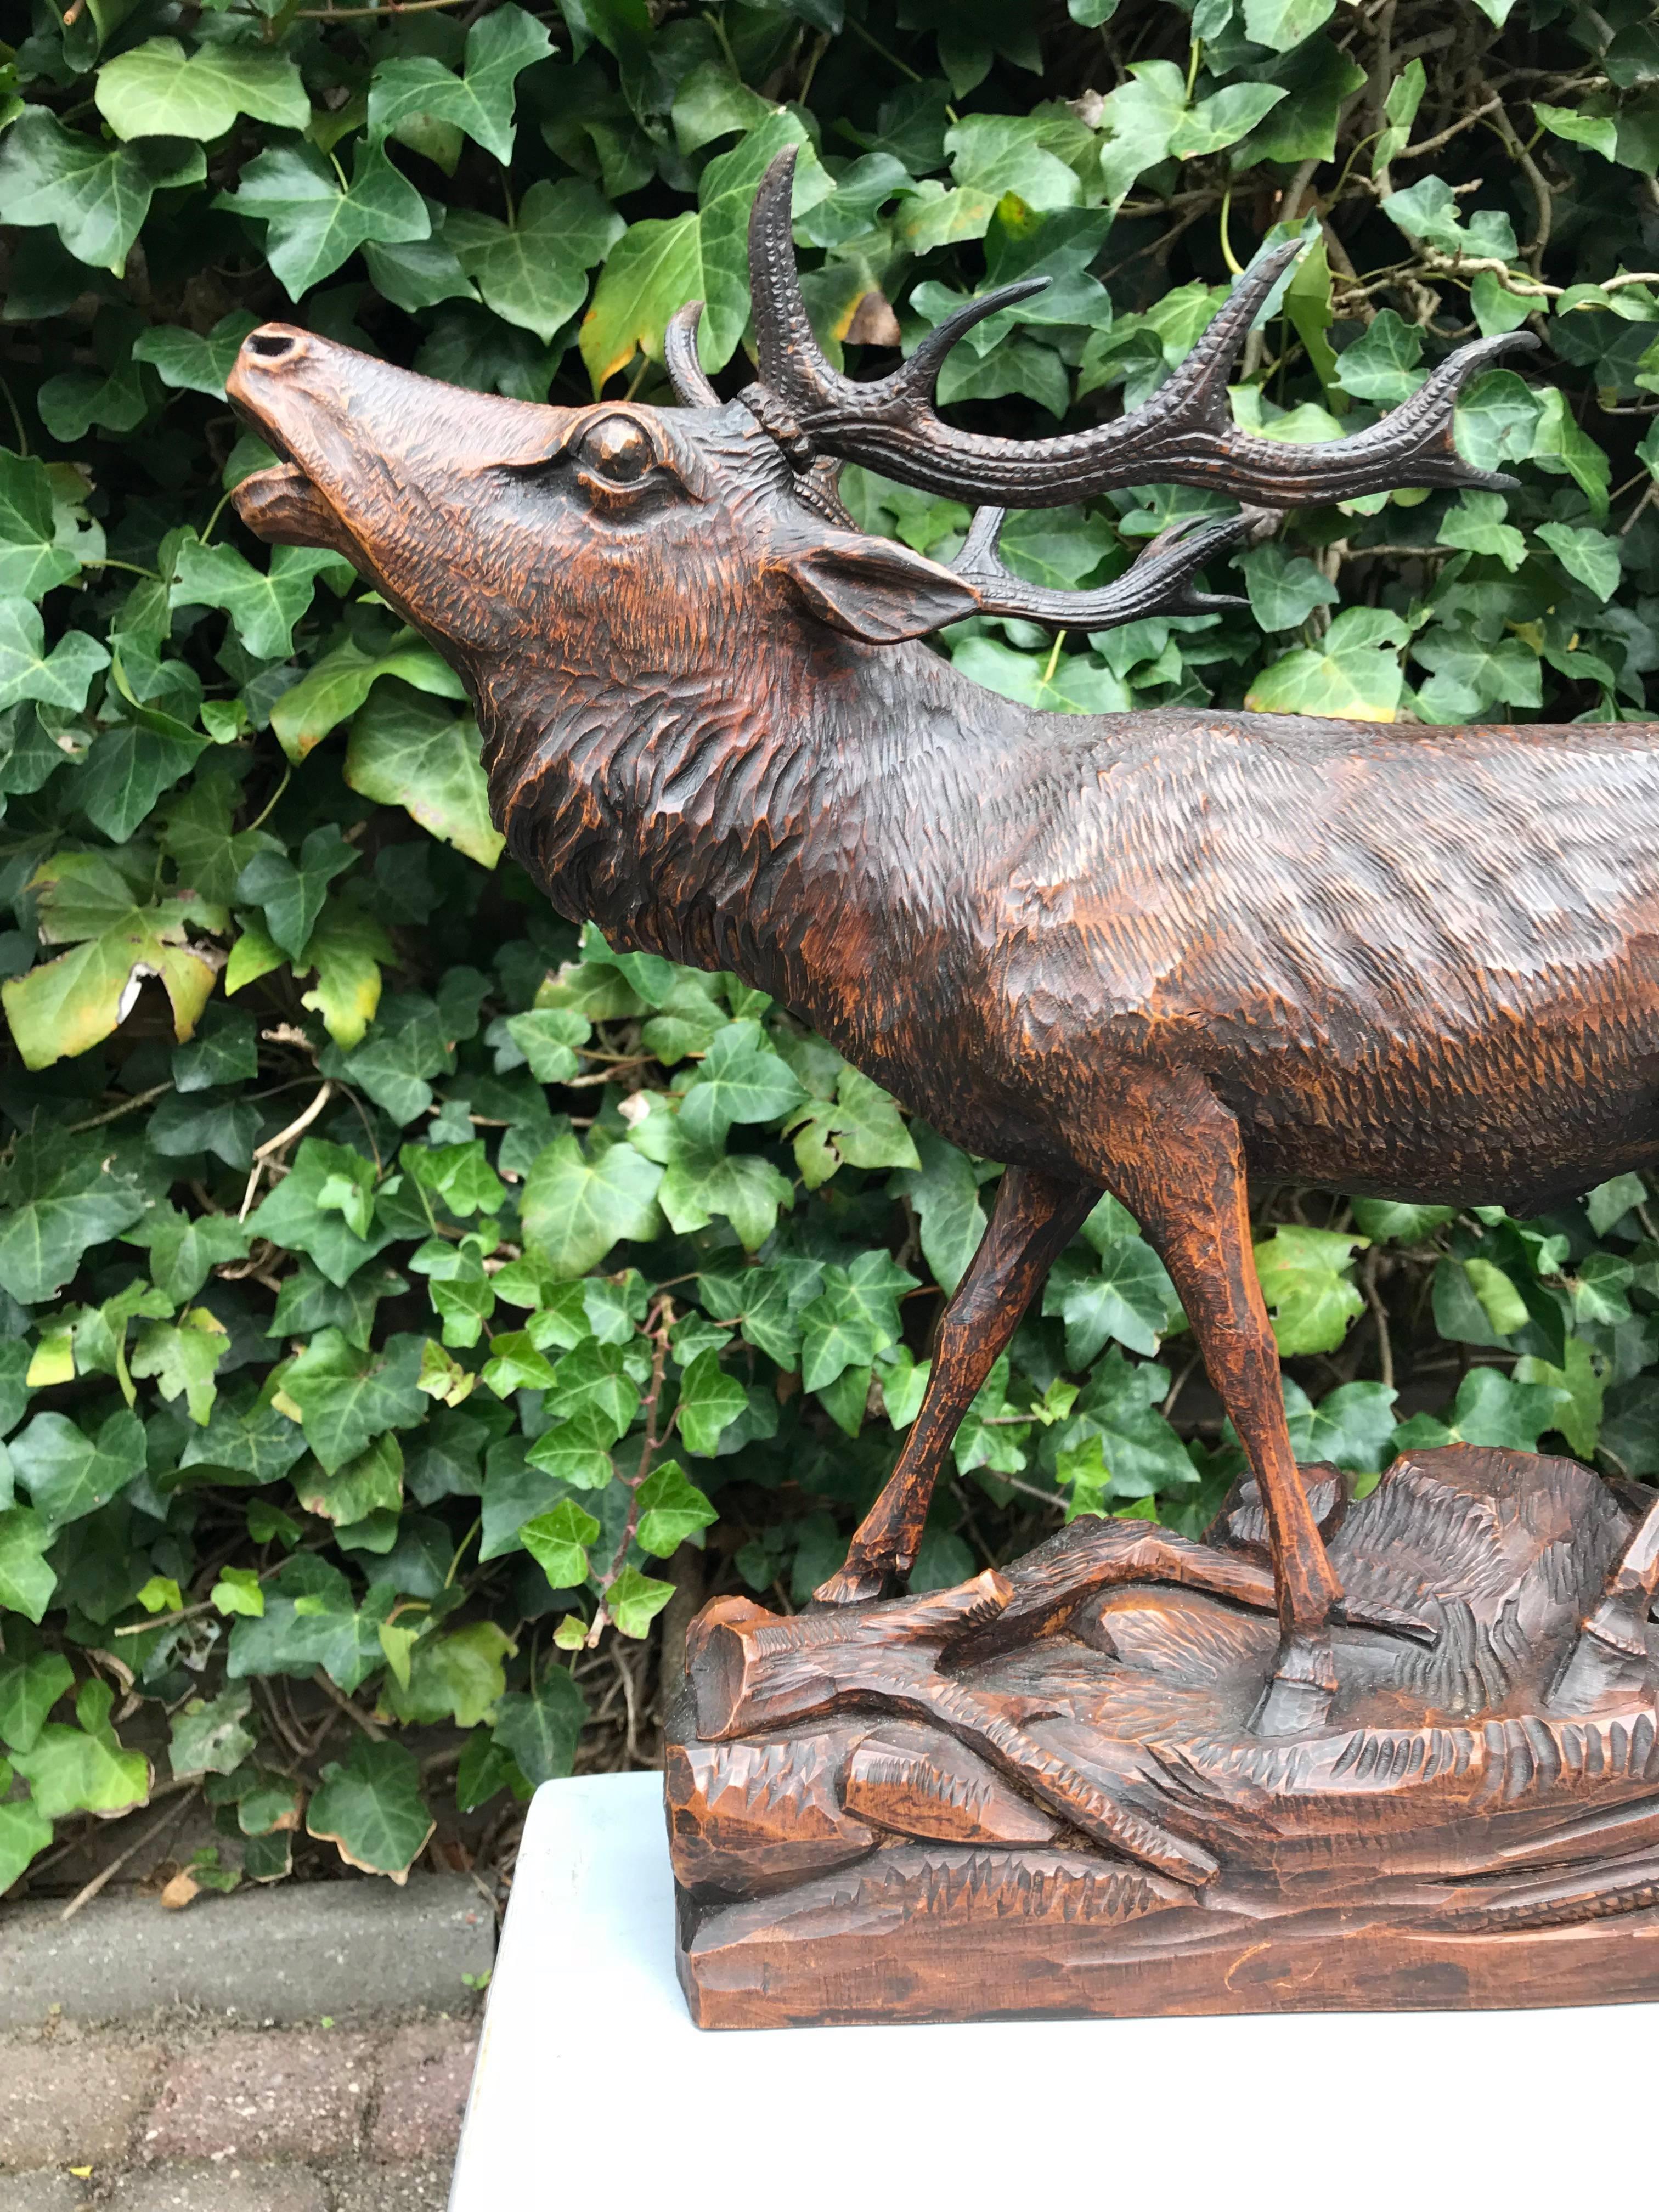 Sculpture de cerf de la Forêt-Noire en bois, de bonne taille et magnifiquement sculptée.

D'après sa posture, il est évident que cet impressionnant cerf, avec sa tête relevée, tente d'attirer et d'impressionner les femelles qui se trouvent dans les